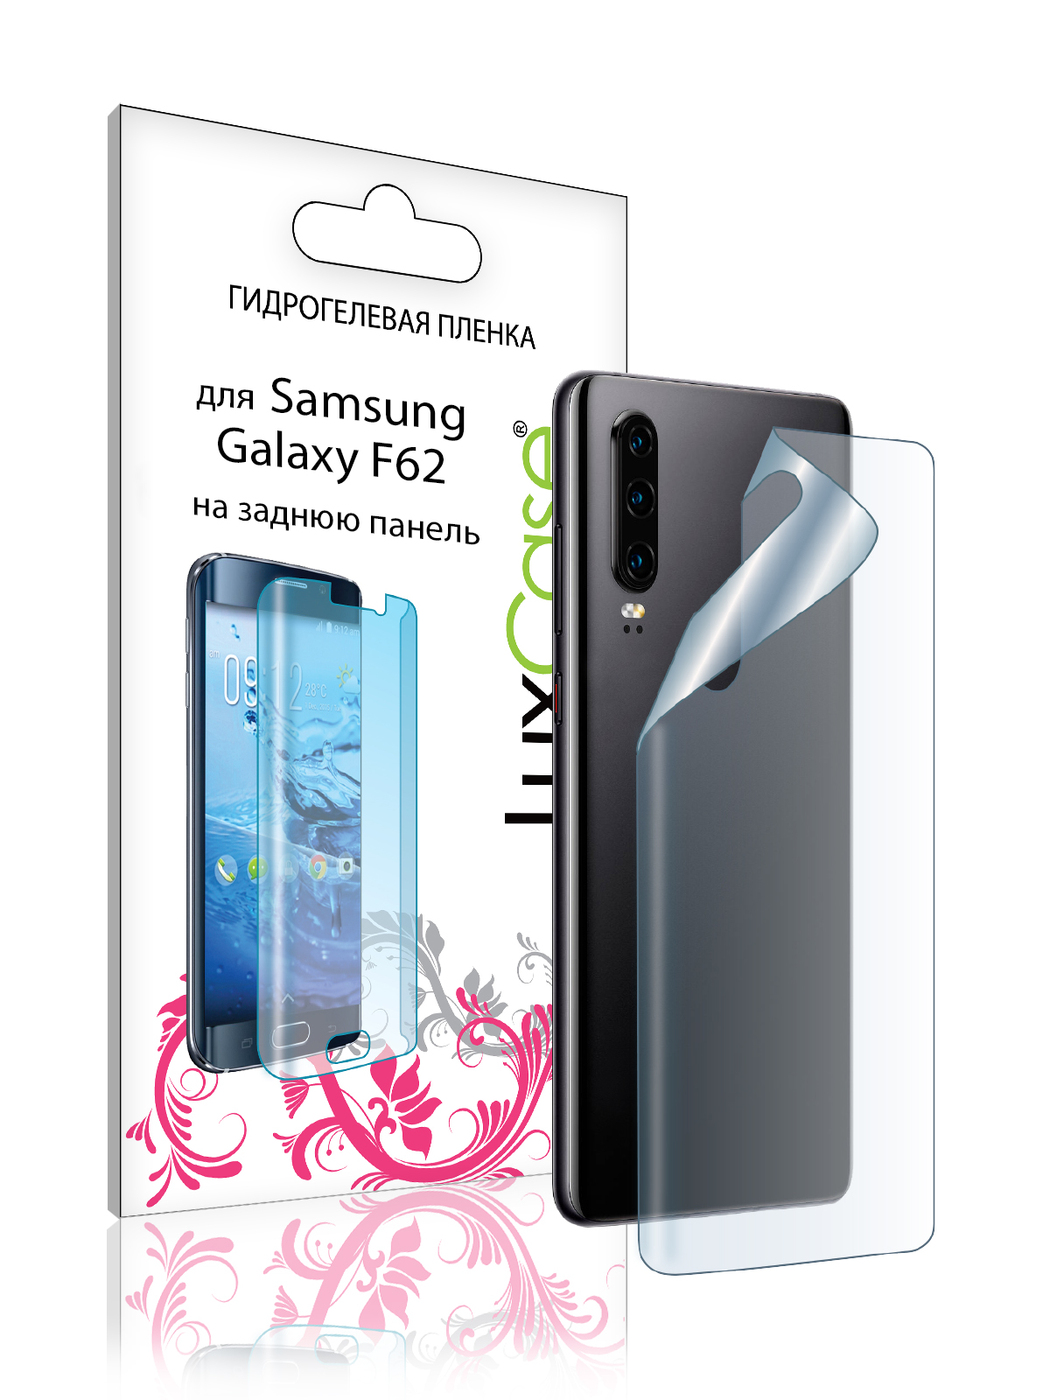 Пленка на заднюю панель LuxCase для Samsung Galaxy F62 0.14mm Transparent 86178 пленка на заднюю панель luxcase для samsung galaxy f62 0 14mm matte 86363